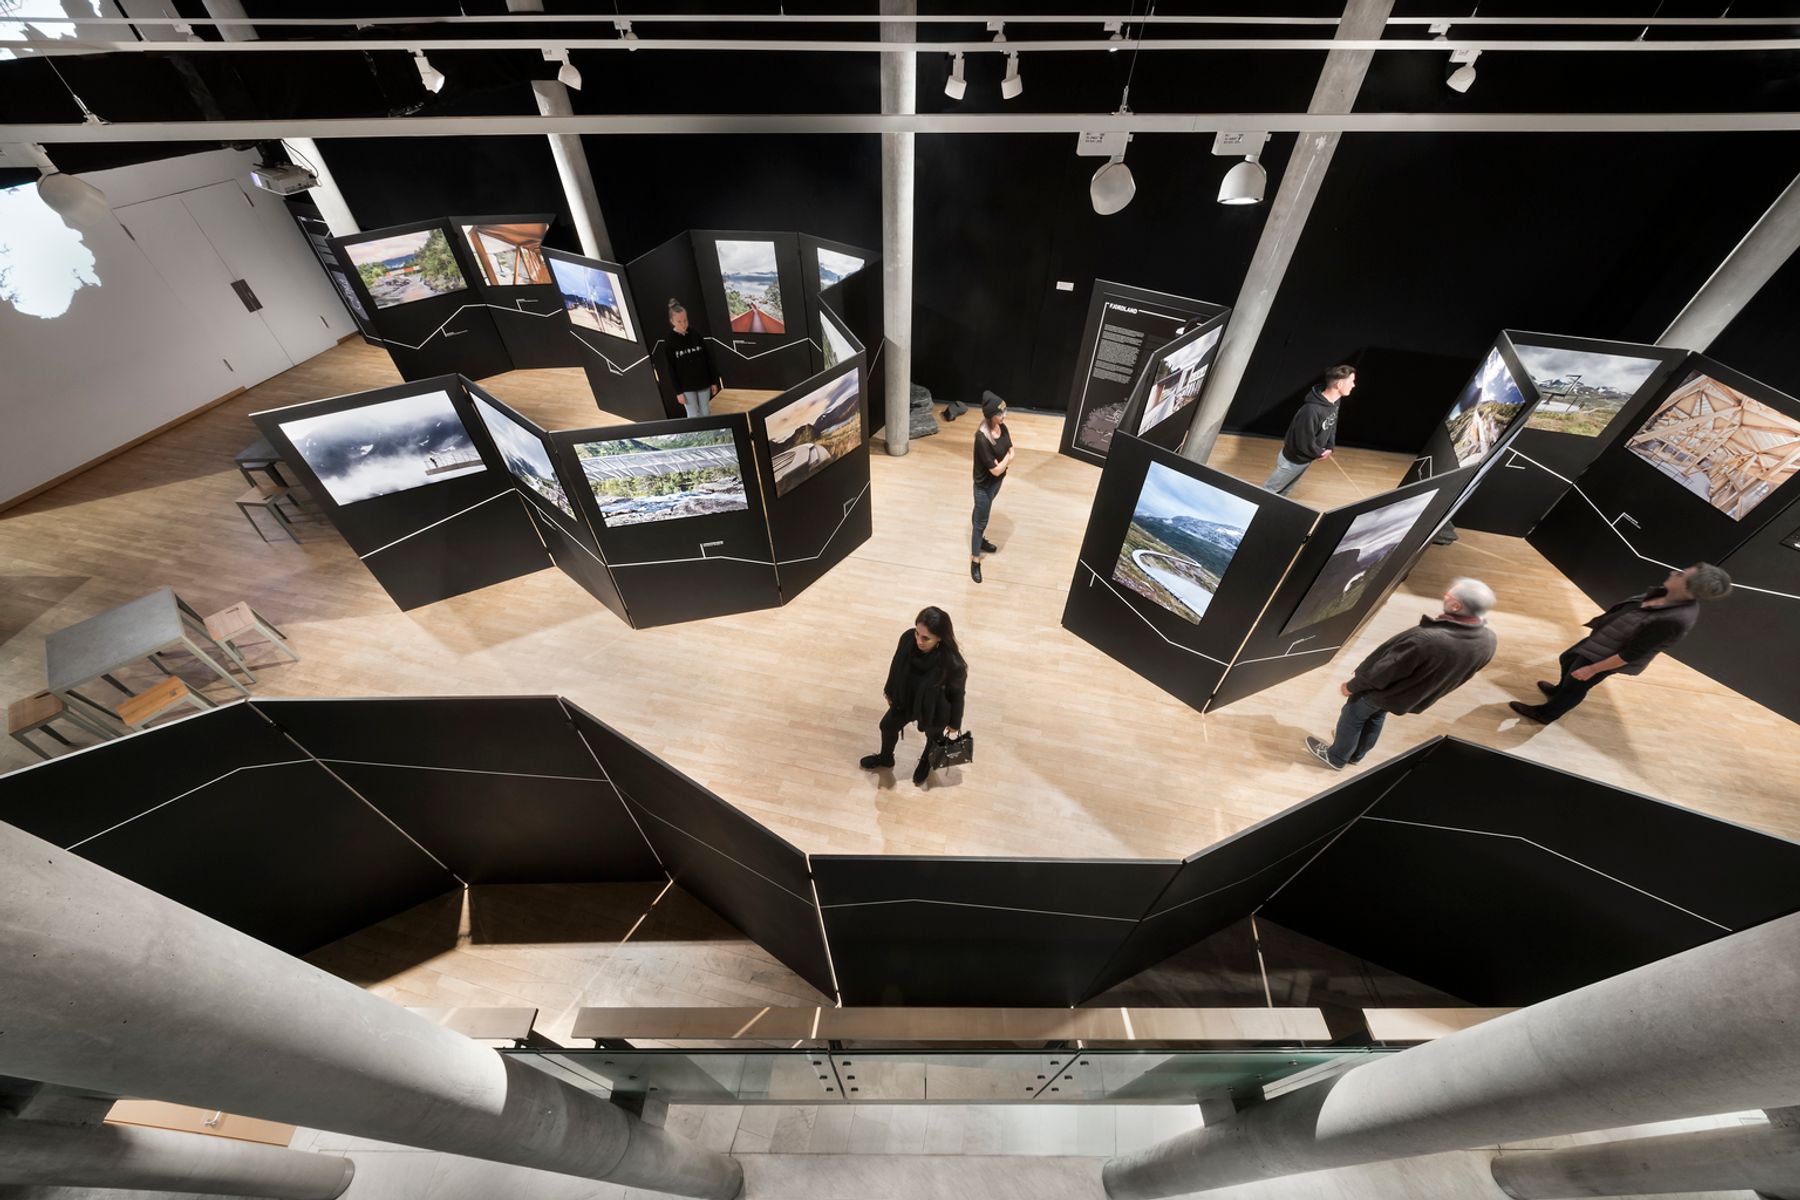 Ausstellung „Architektur und Landschaft in Norwegen“ von Ken Schluchtmann in den Nordischen Botschaften, Berlin. Fotografie: Ken Schluchtmann / diephotodesigner.de, Berlin.